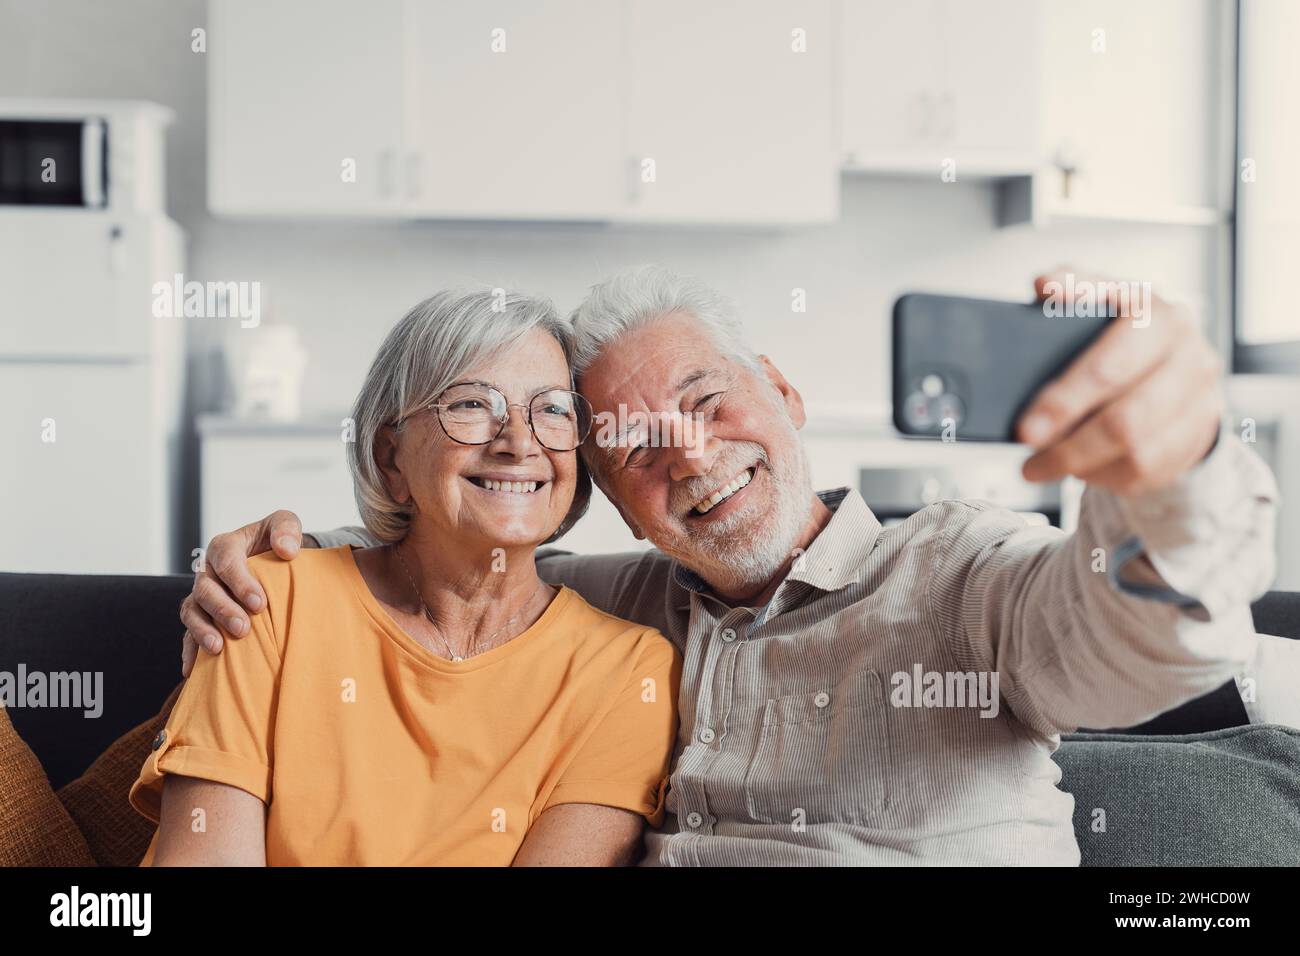 Una vecchia coppia felice che scatta selfie al cellulare, sposi anziani e maturi sorridenti, moglie di mezza età e marito in pensione che ridono tenendo il telefono, realizza un autoritratto sulla fotocamera dello smartphone, concentrandoti sul display del cellulare Foto Stock